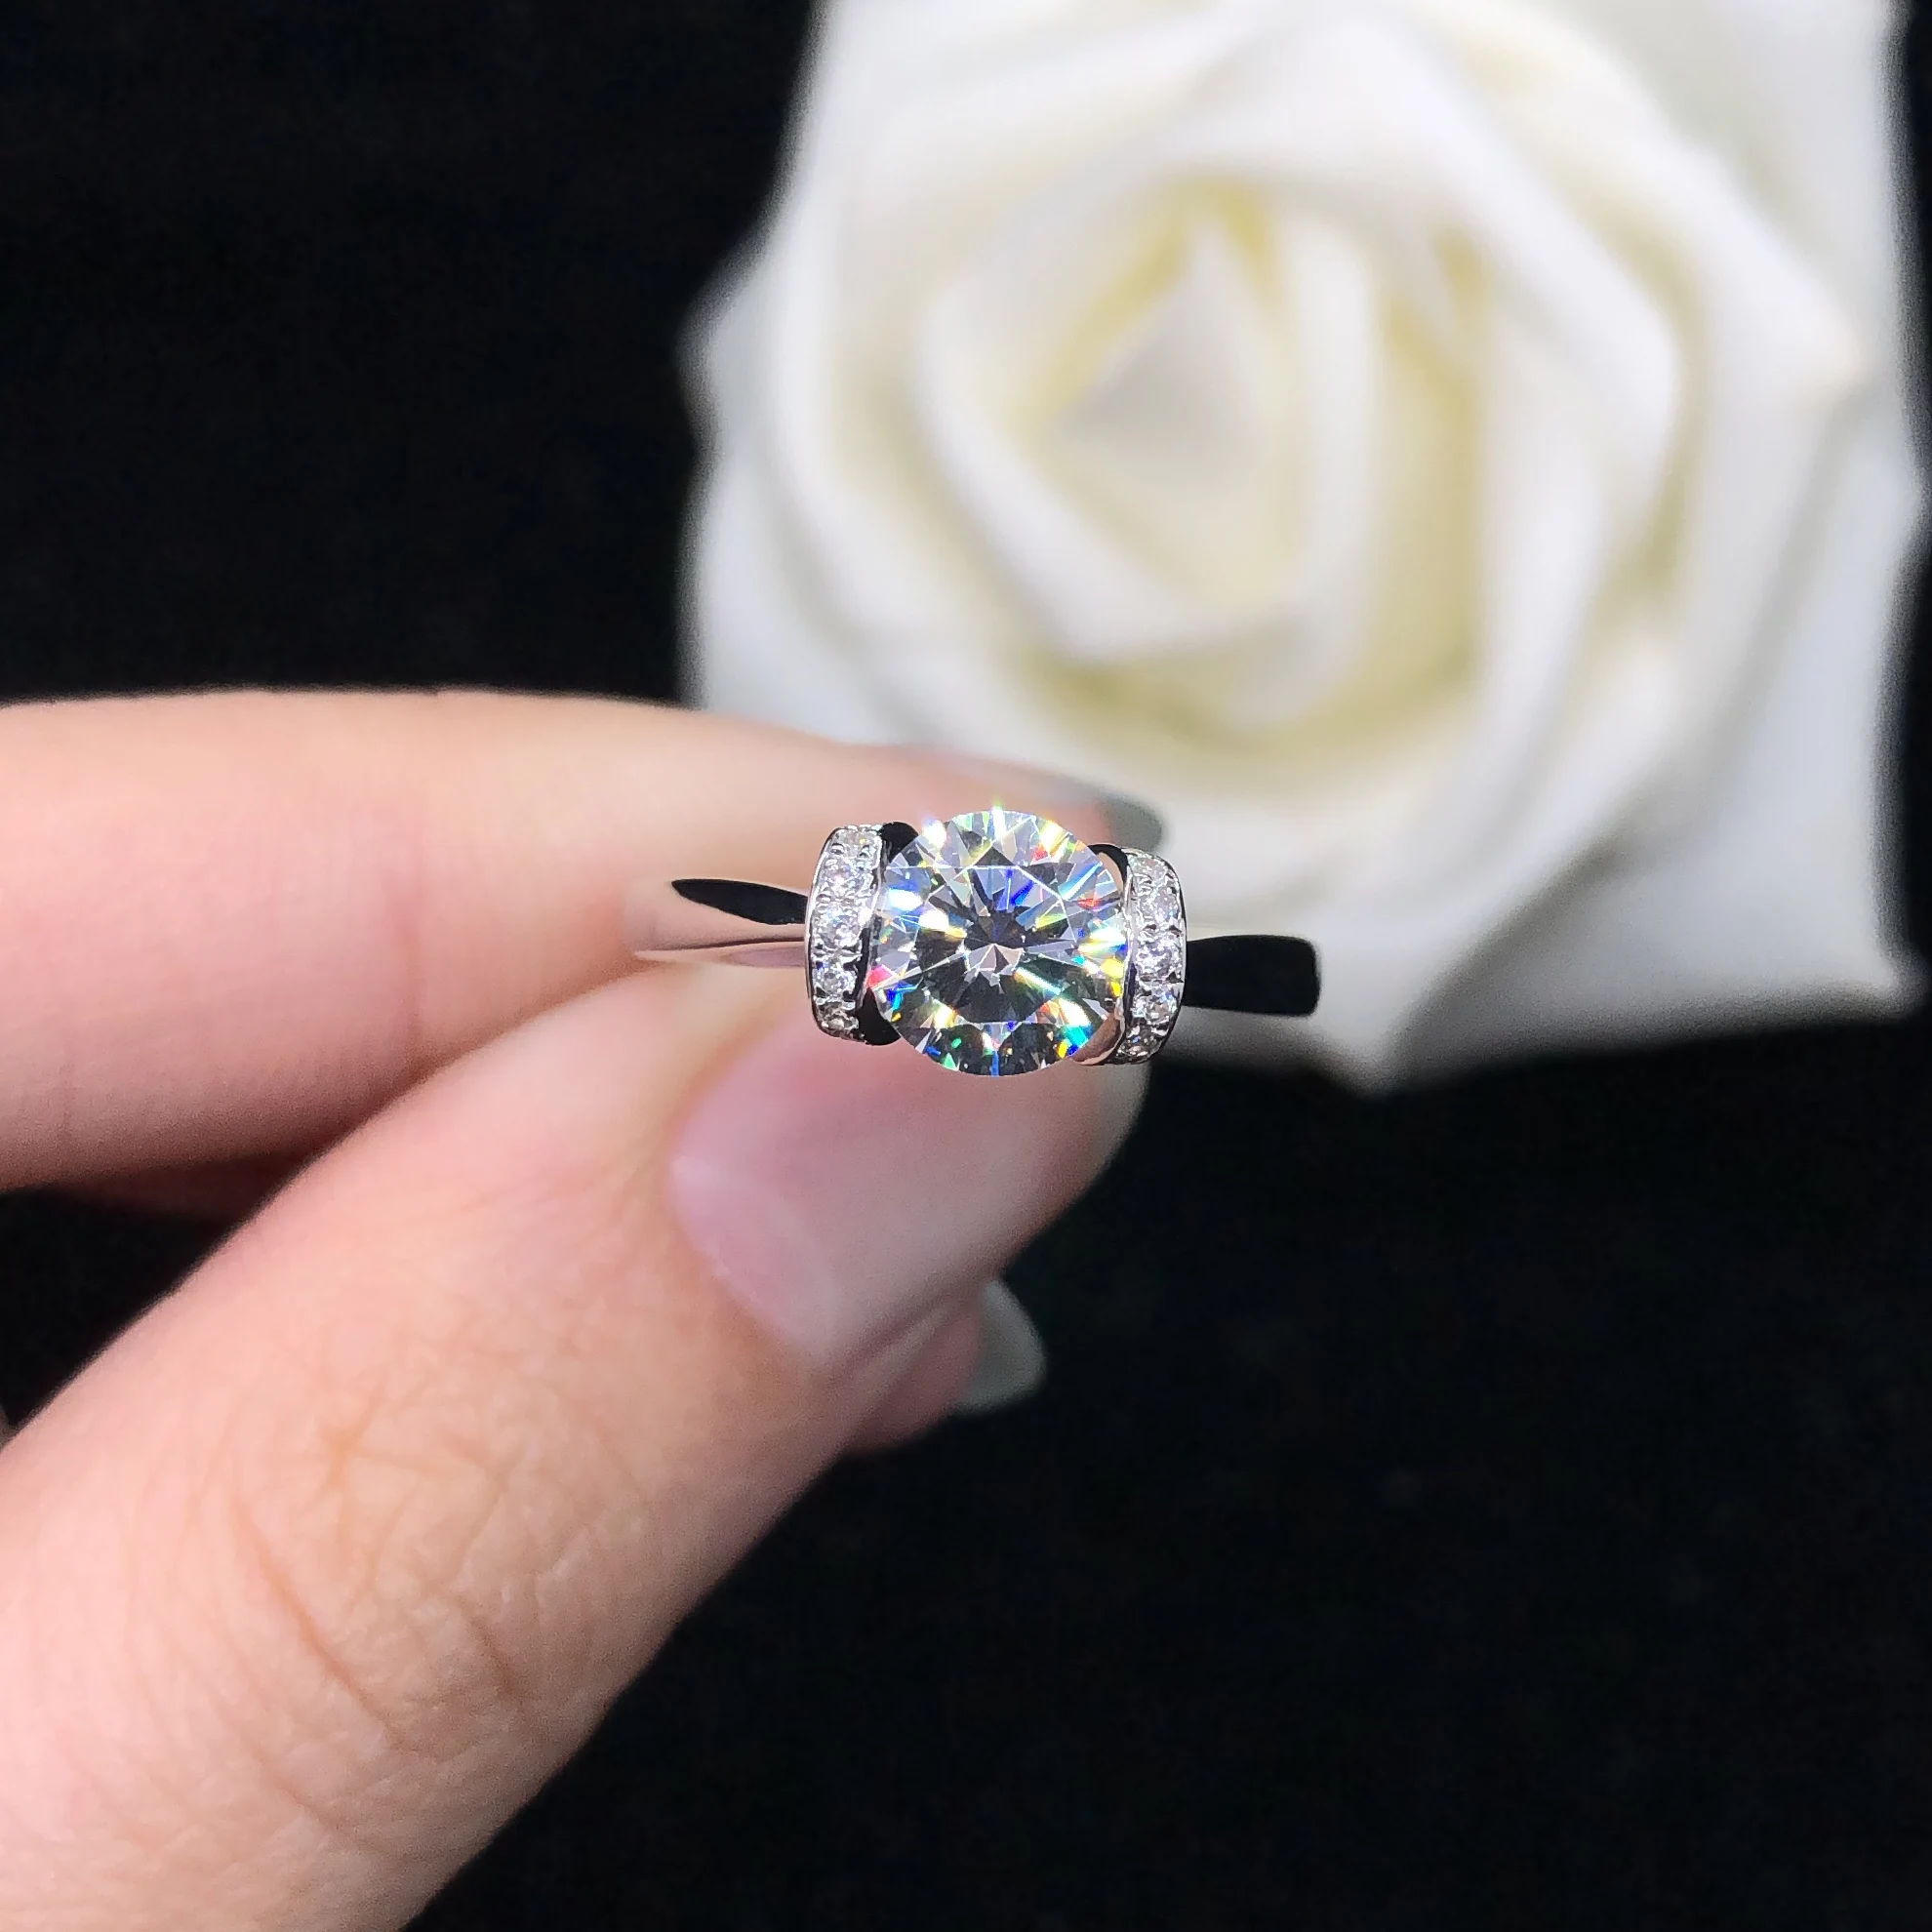 

Женское Обручальное Кольцо Angel's Kiss Style, однотонное кольцо из белого золота 750 пробы с круглым бриллиантом 1 карат, 18 К